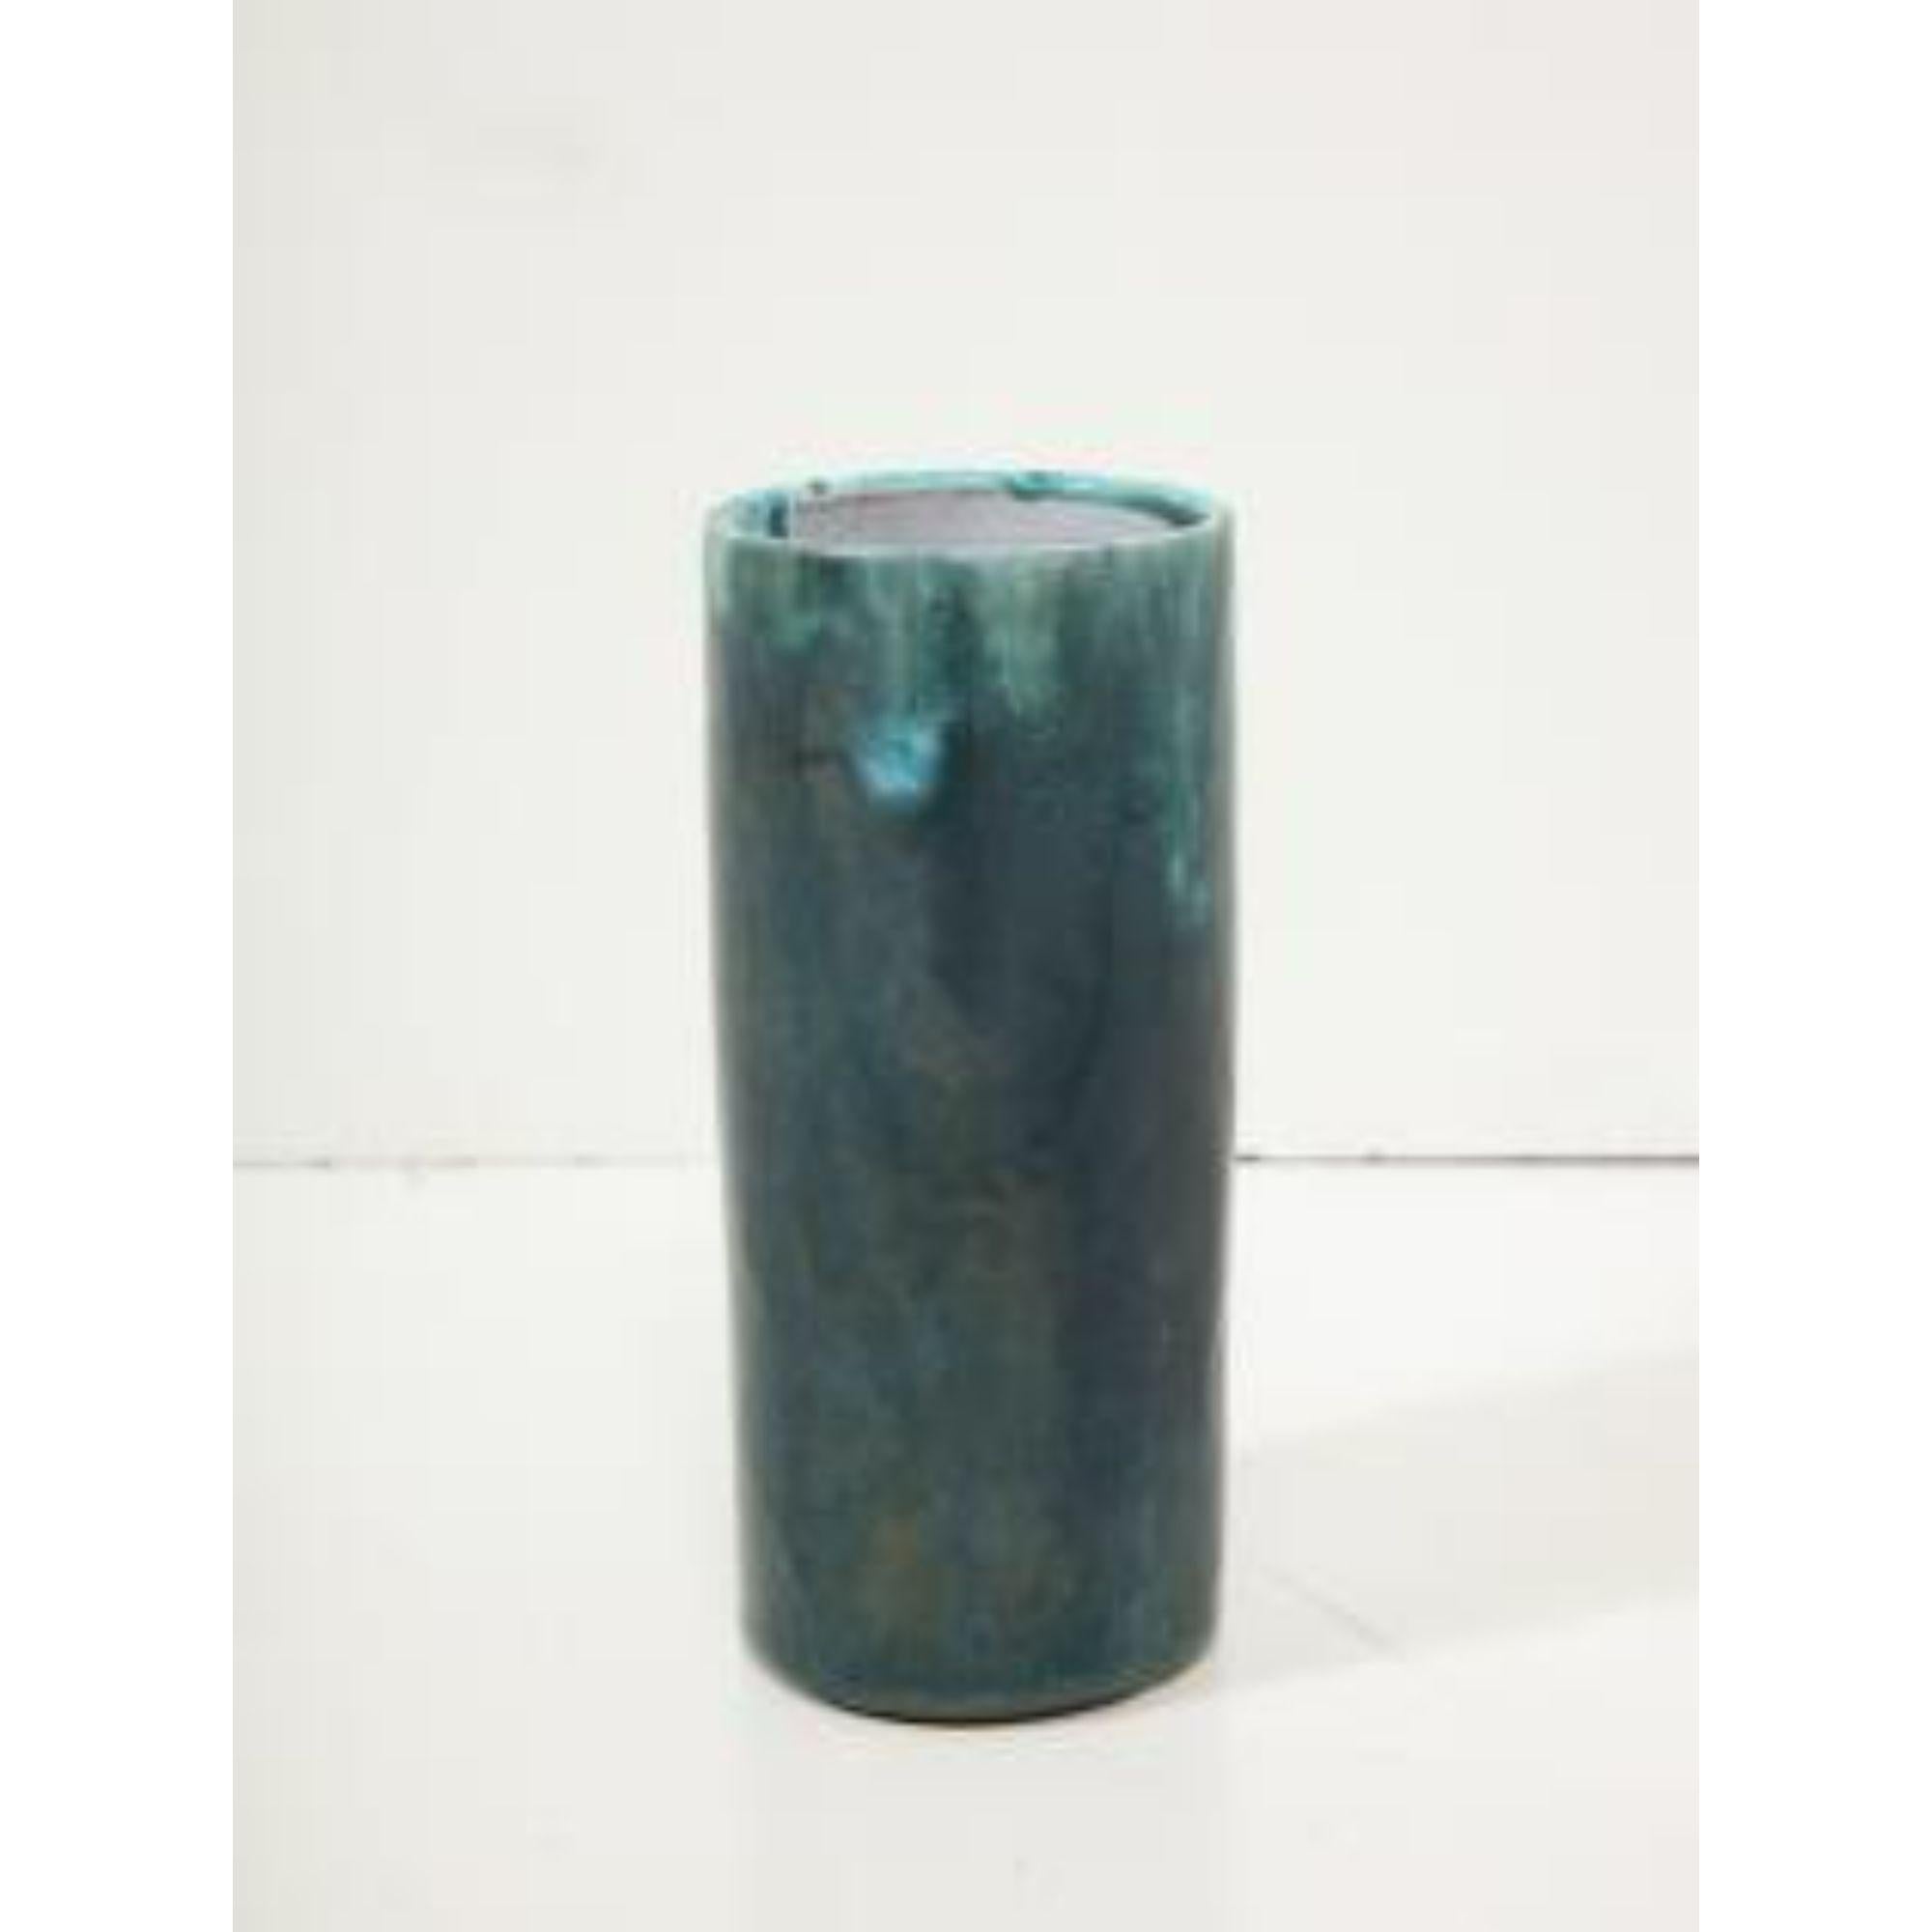 Diese elegante Studio-Vase wurde in der traditionsreichen Keramikstadt Biot in Frankreich hergestellt.

